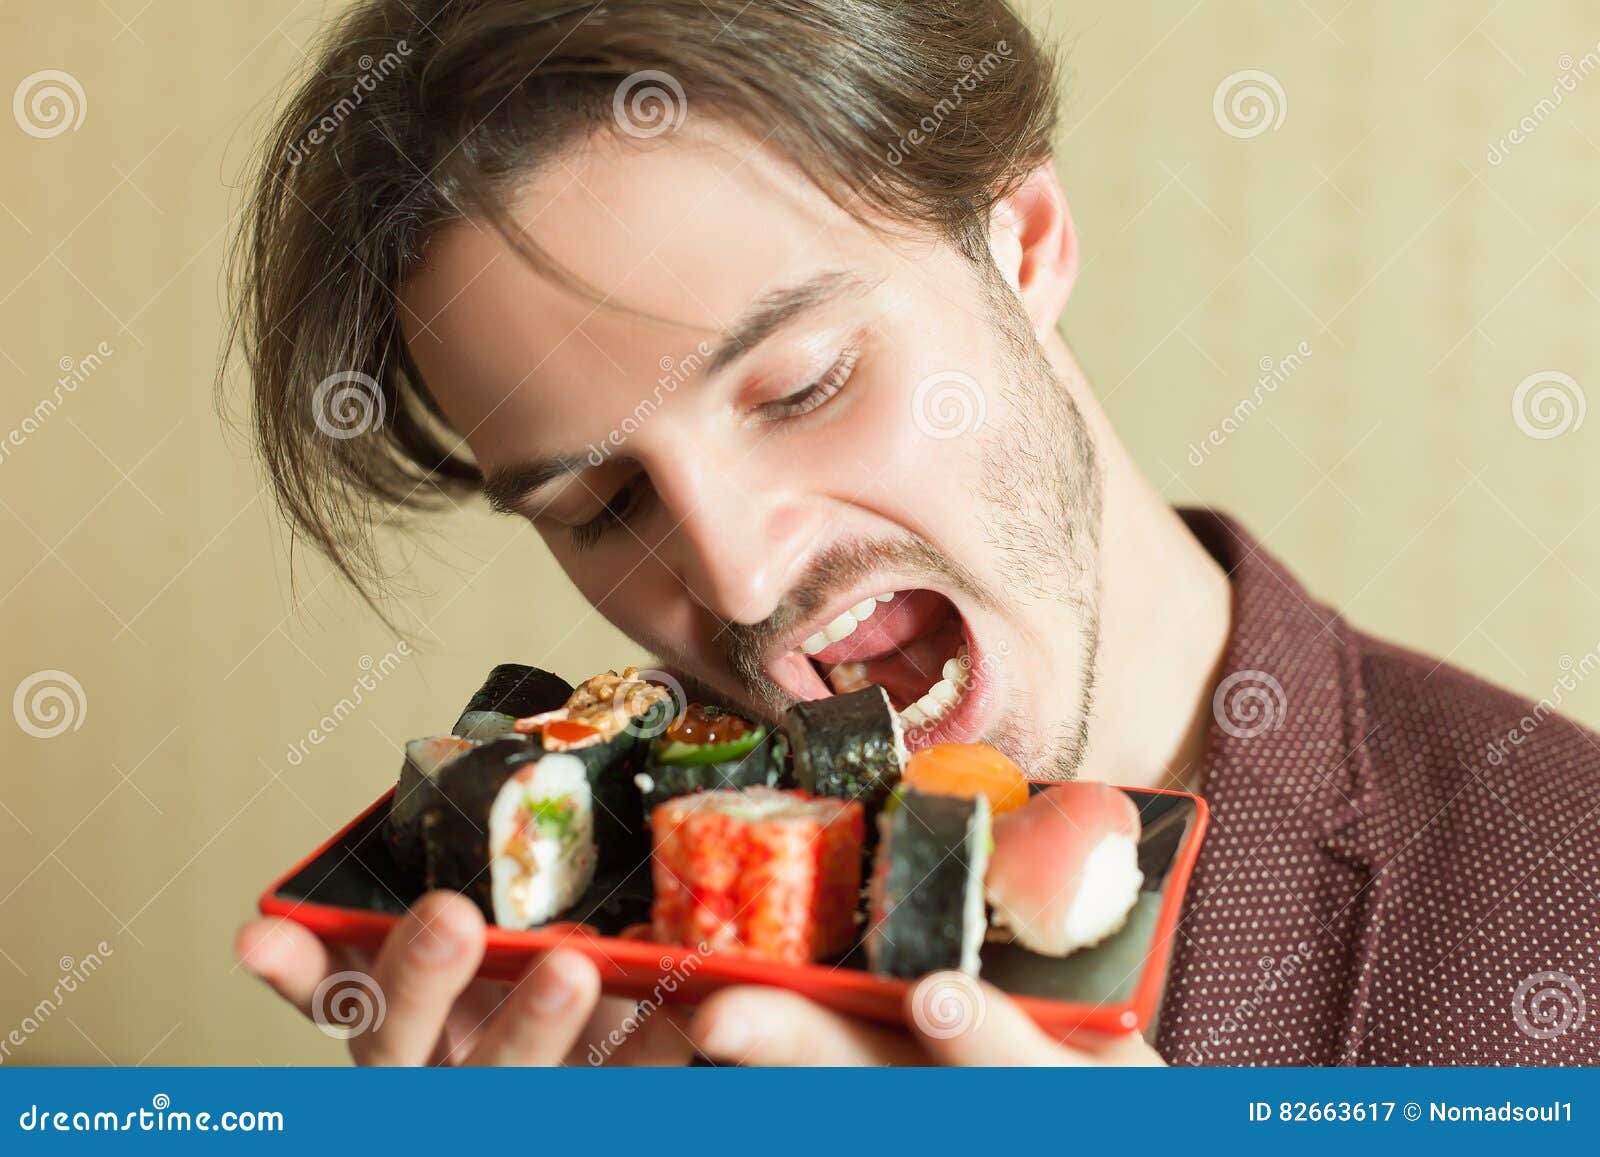 Муж ест руками. Человек, поедающий роллы. Люди едят суши. Парень ест суши. Мужчина ест роллы.